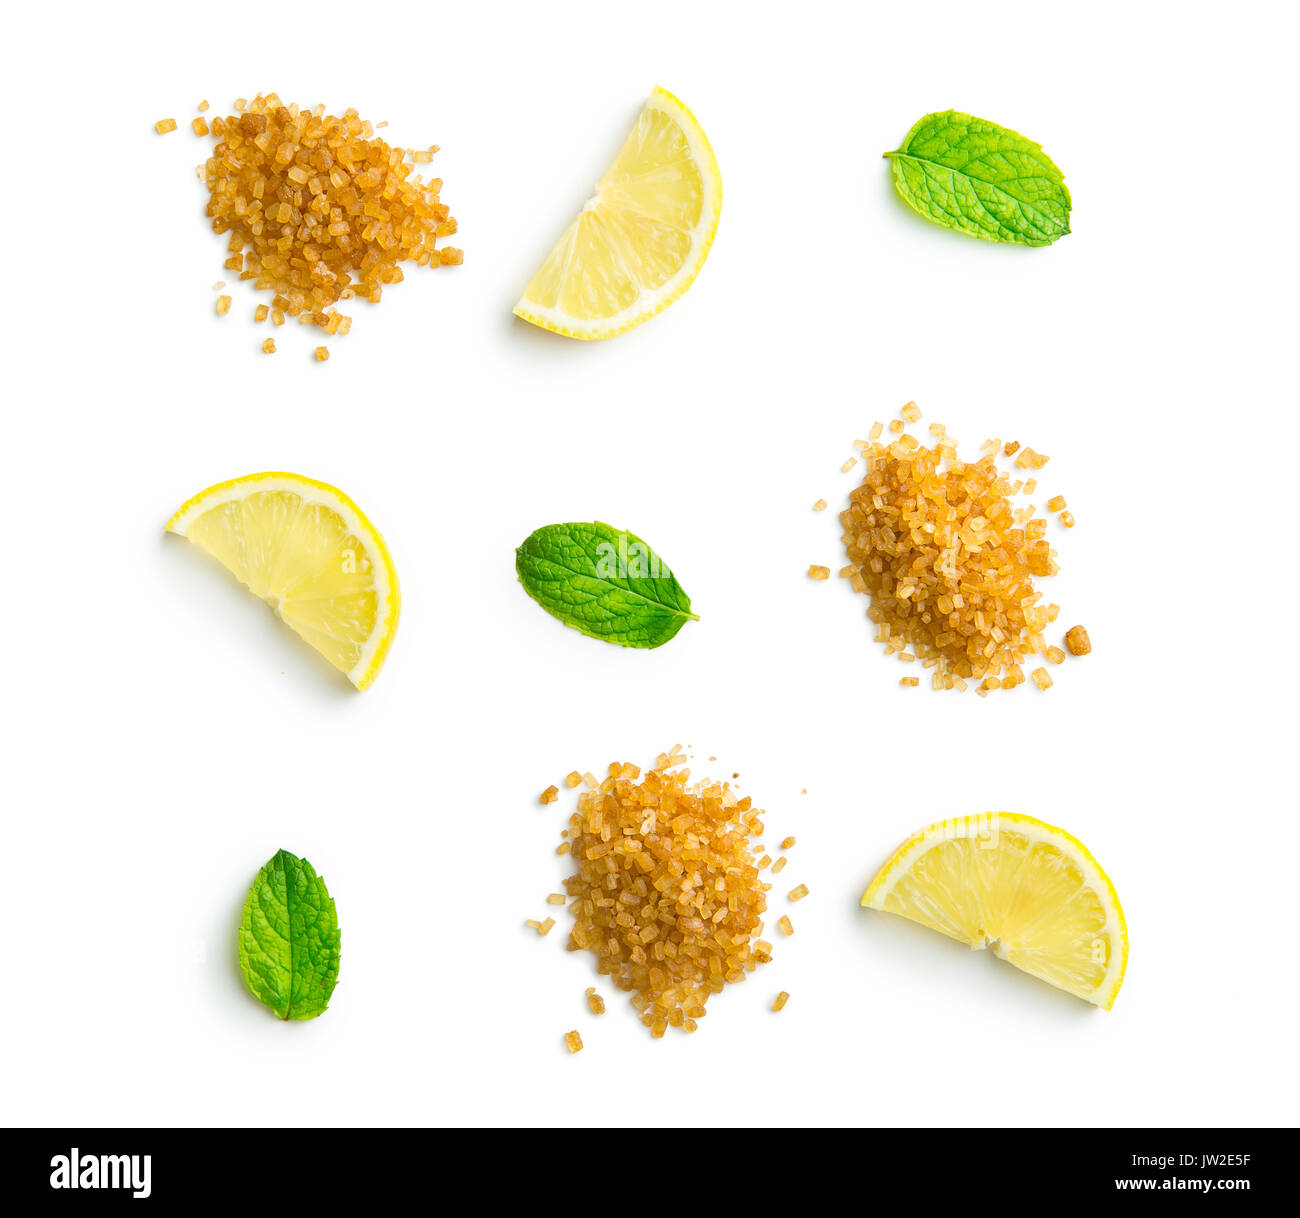 Mojito ingredienti. Limone, menta e zucchero di canna isolati su sfondo bianco. Dolce zucchero, foglie di menta e limone. Foto Stock